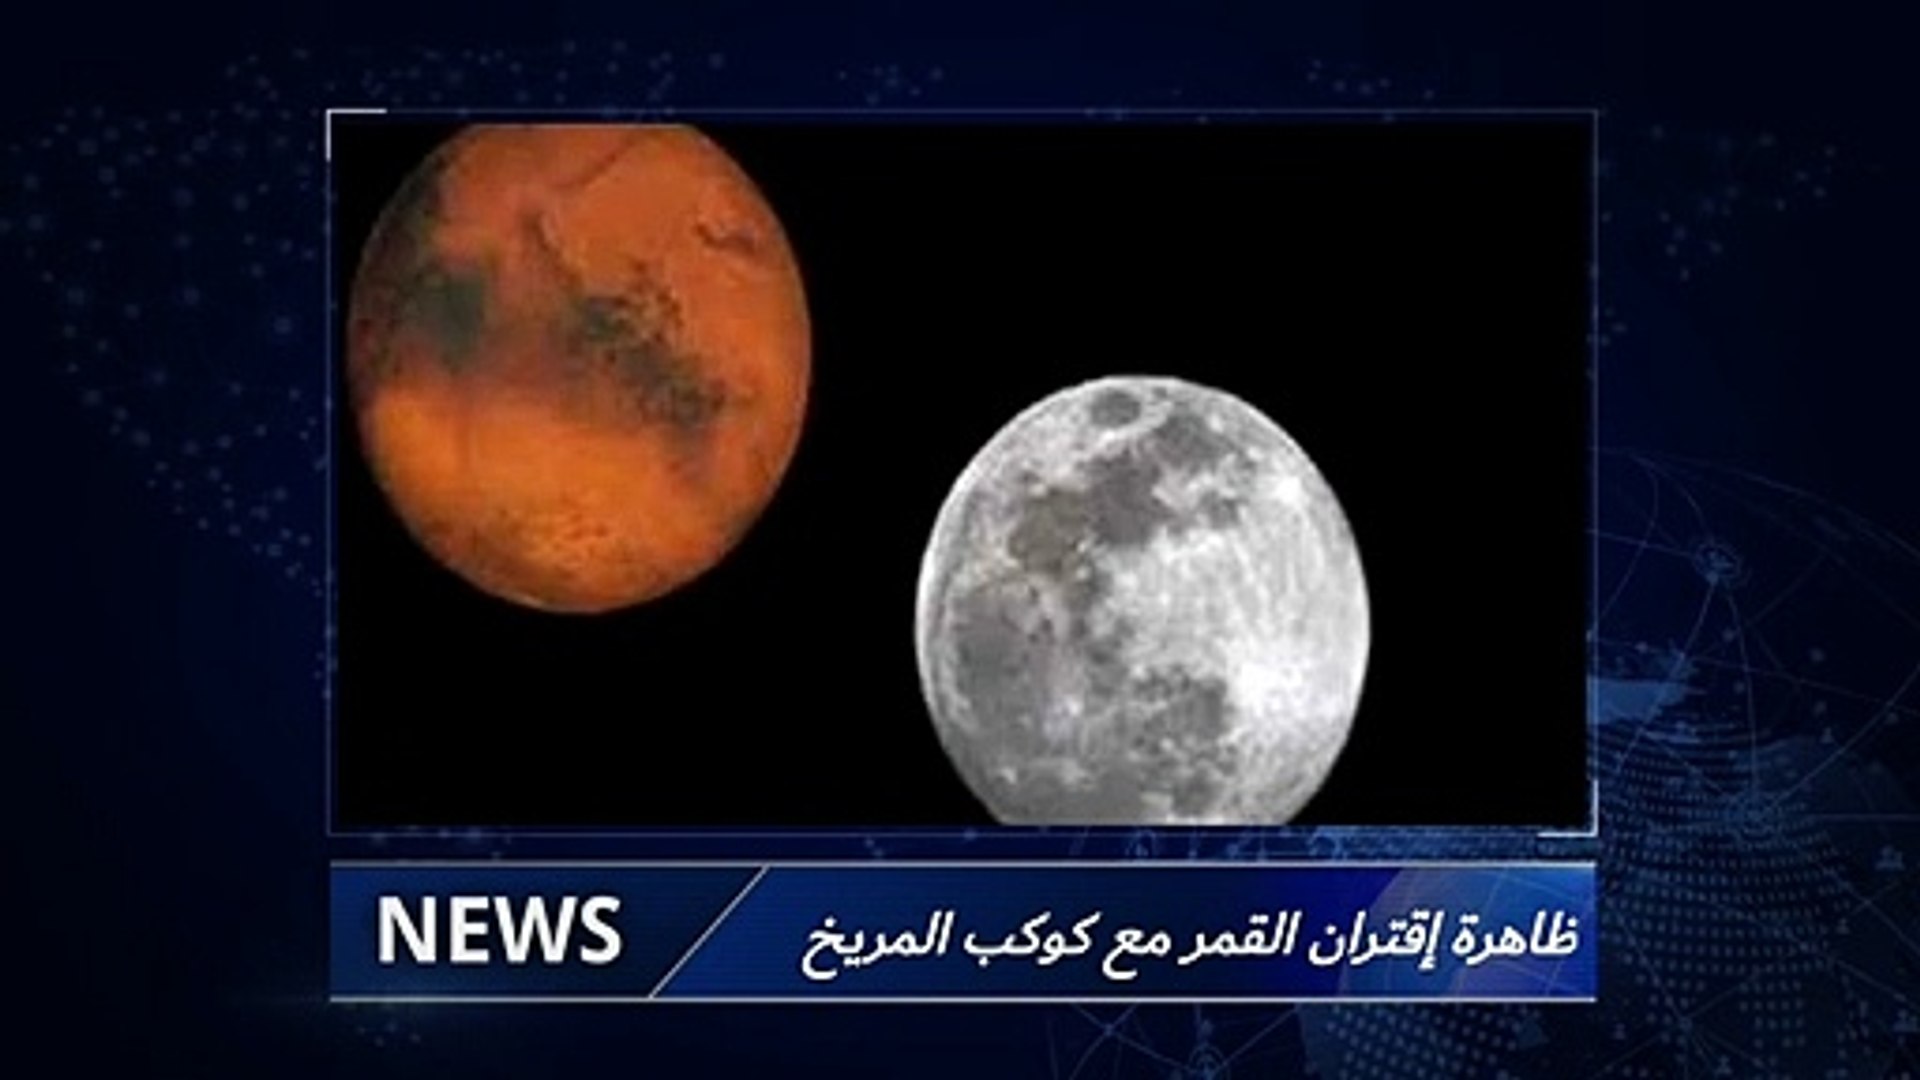 اقتران القمر مع المريخ ظاهرة إقتران القمر مع كوكب المريخ الأحمر اليوم -  فيديو Dailymotion